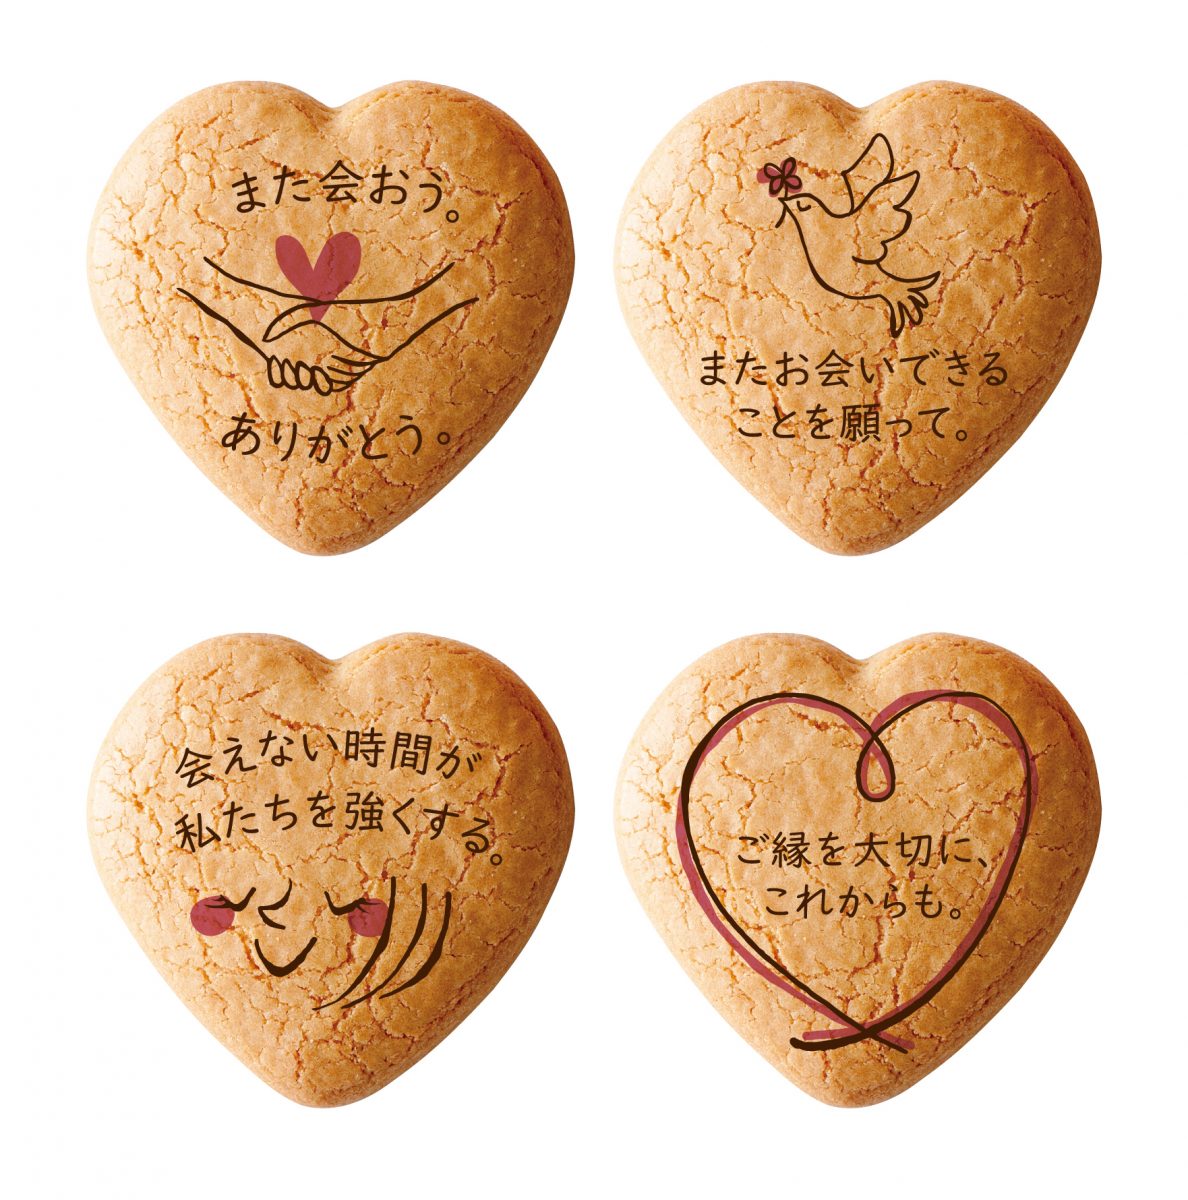 【兵庫県】お菓子で想いを届けるメッセージ入り「しあわせサブレ」